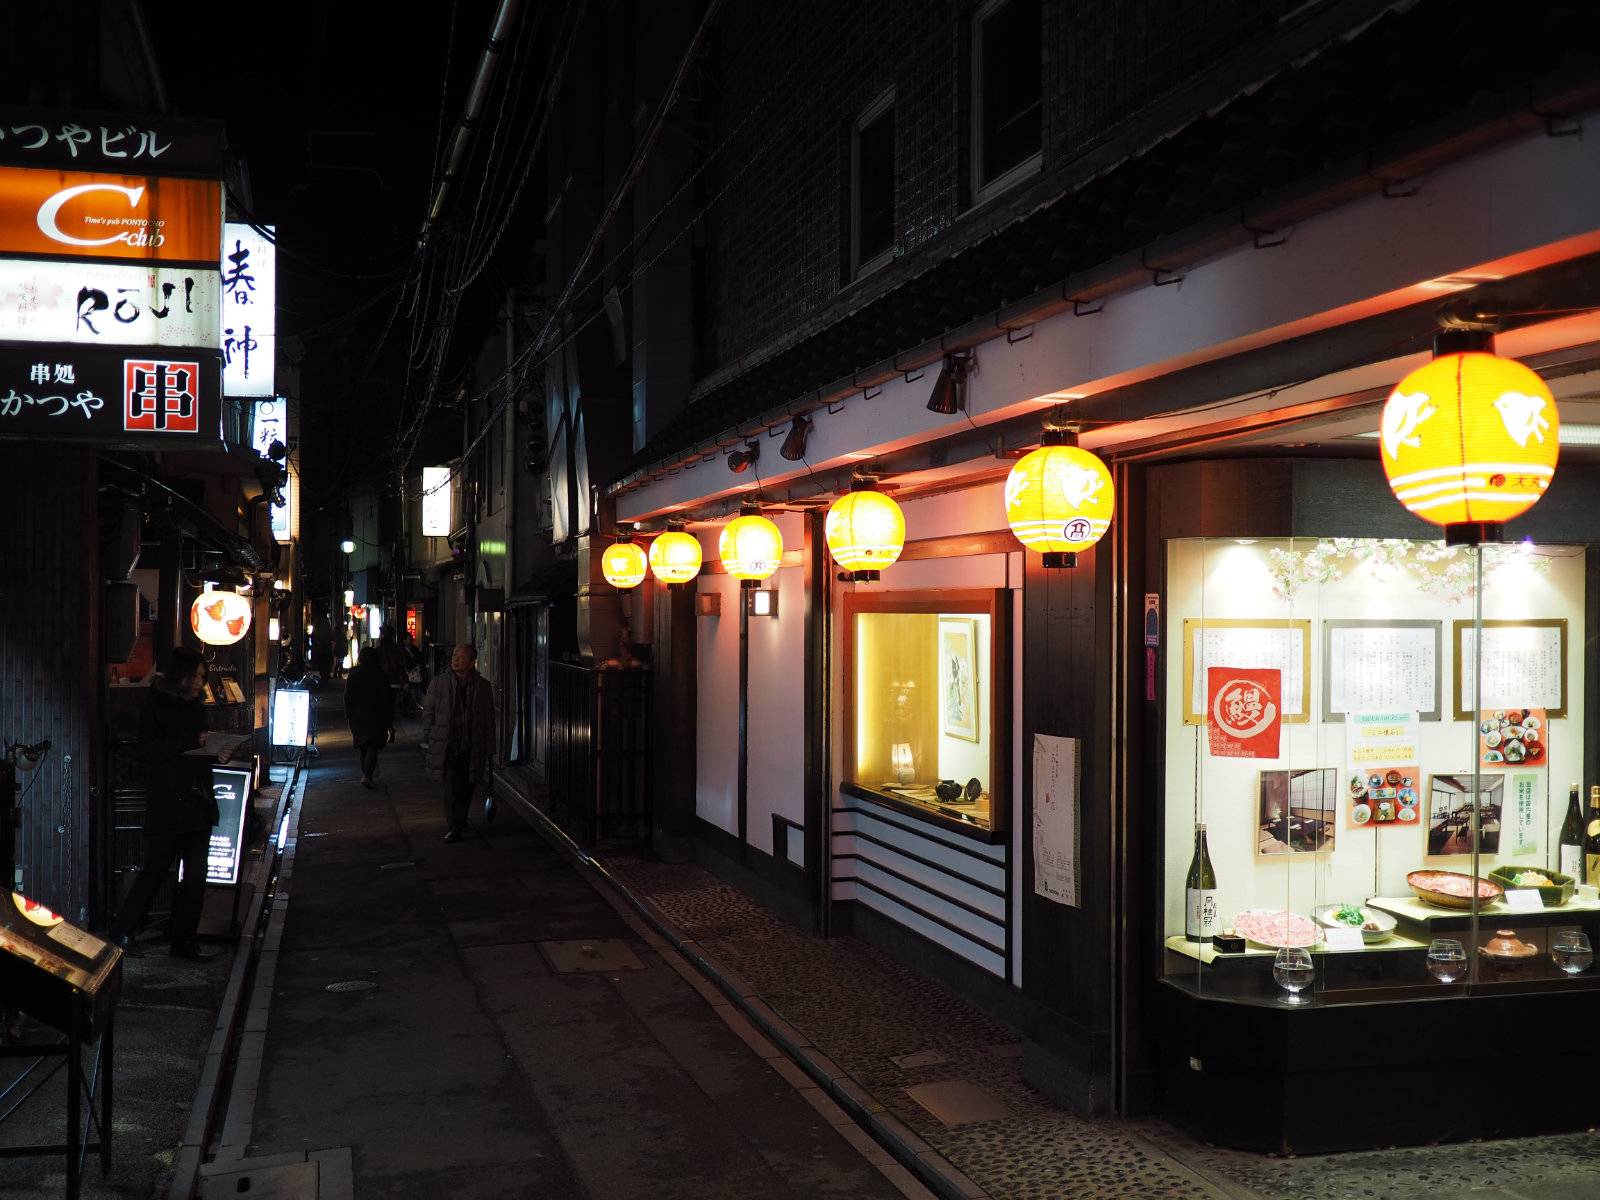 Ponto-chō alley stalls